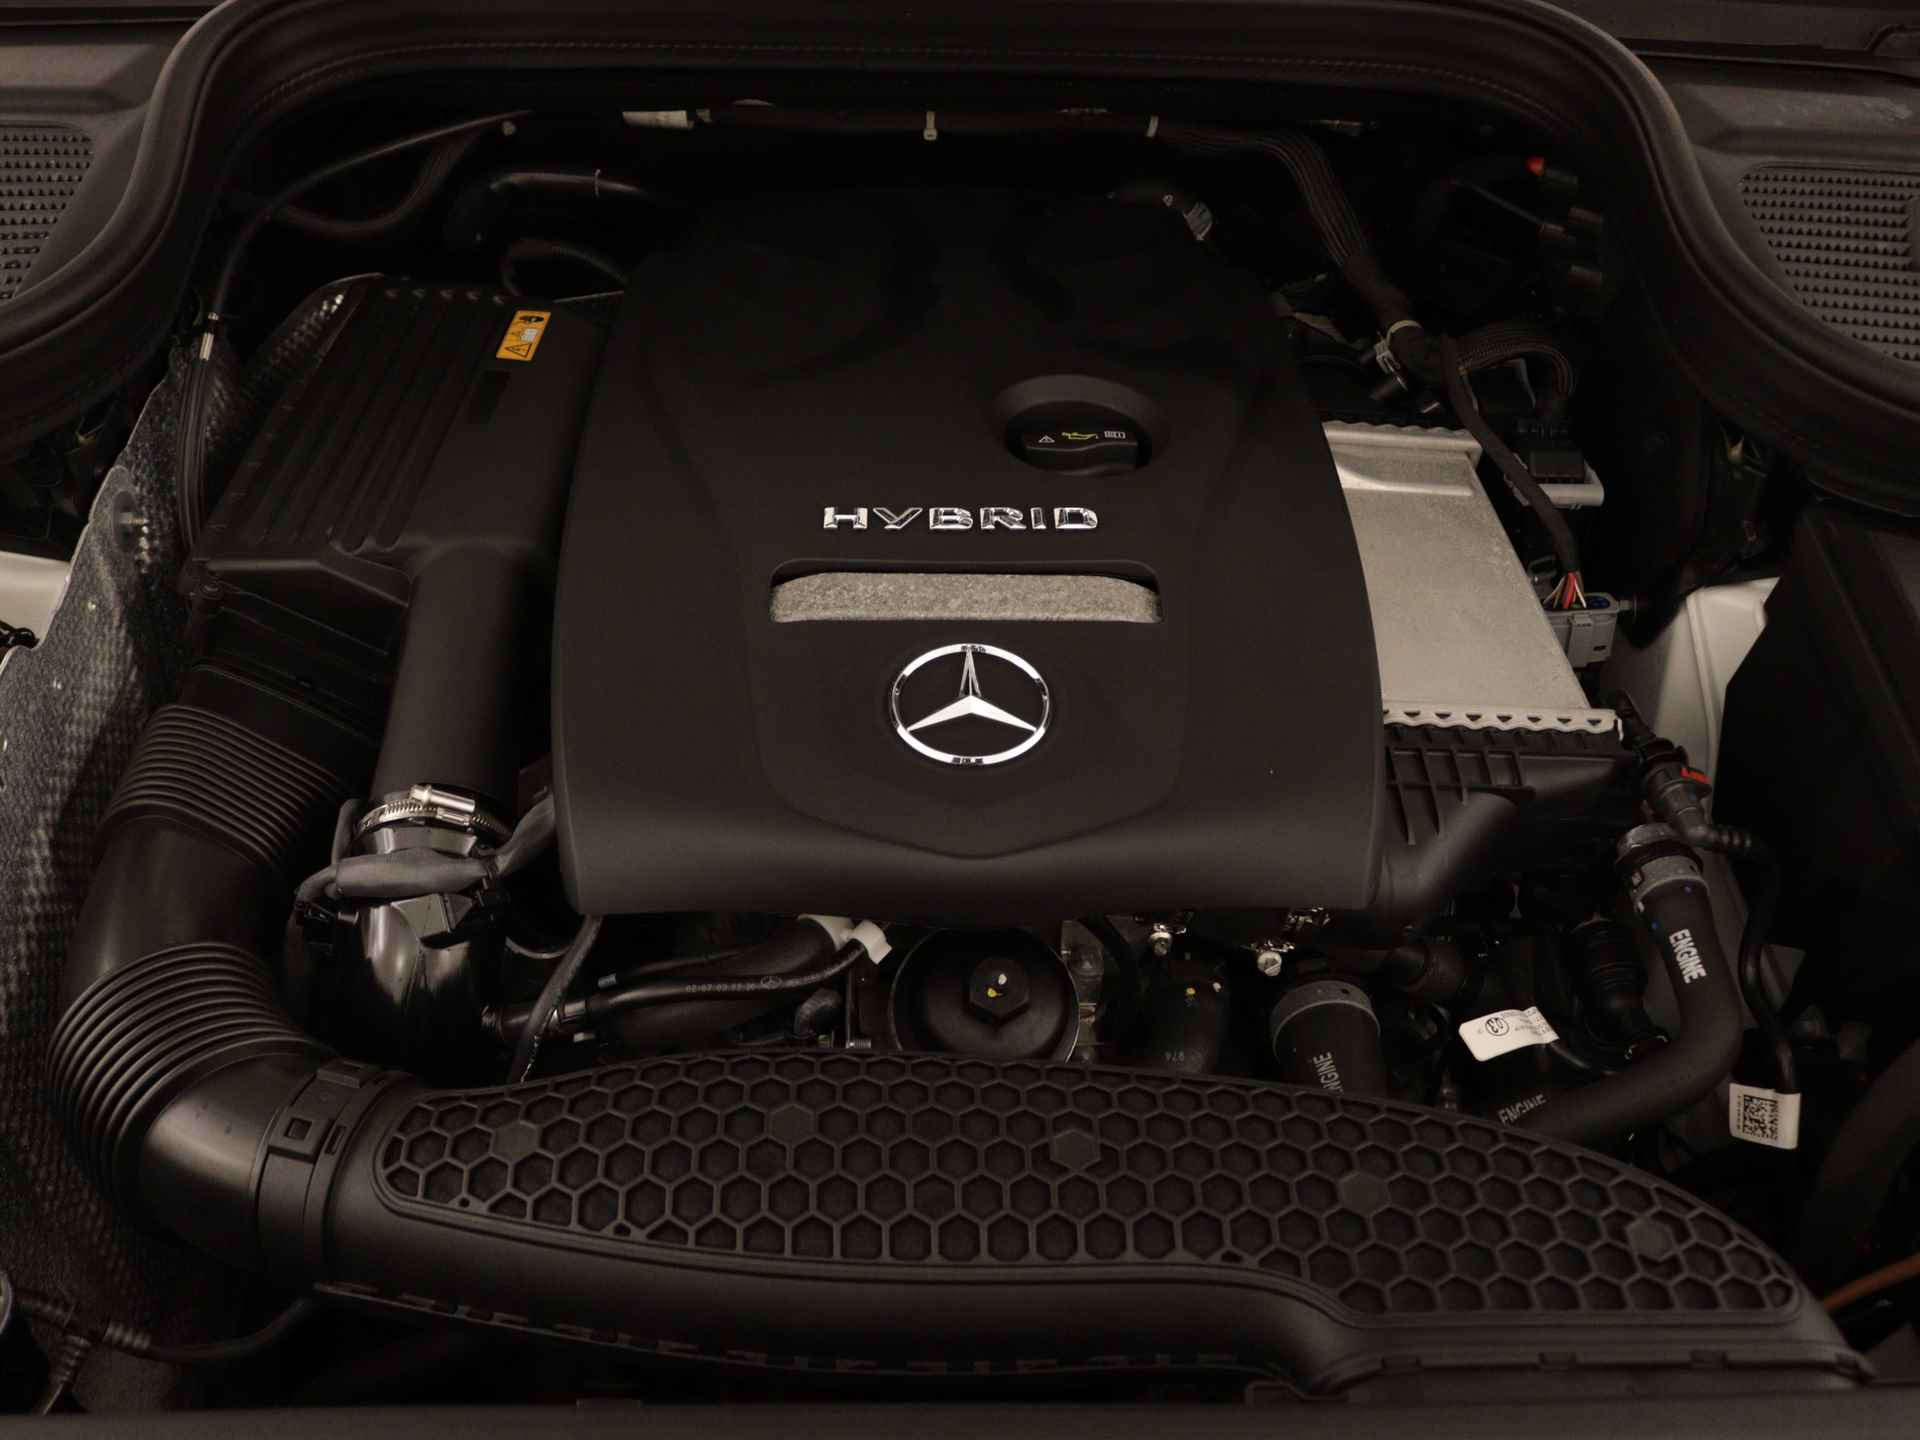 Mercedes-Benz GLE 350 e 4-MATIC AMG Nightpakket Limited 5 spaaks lichtmetalen velgen | Trekhaak | Airmatic | Treeplanken | Alarm klasse 3 |  Augmented Reality | sfeerverlichting | DAB | Parking support | inclusief 24 maanden MB Certified garantie voor europa - 41/45